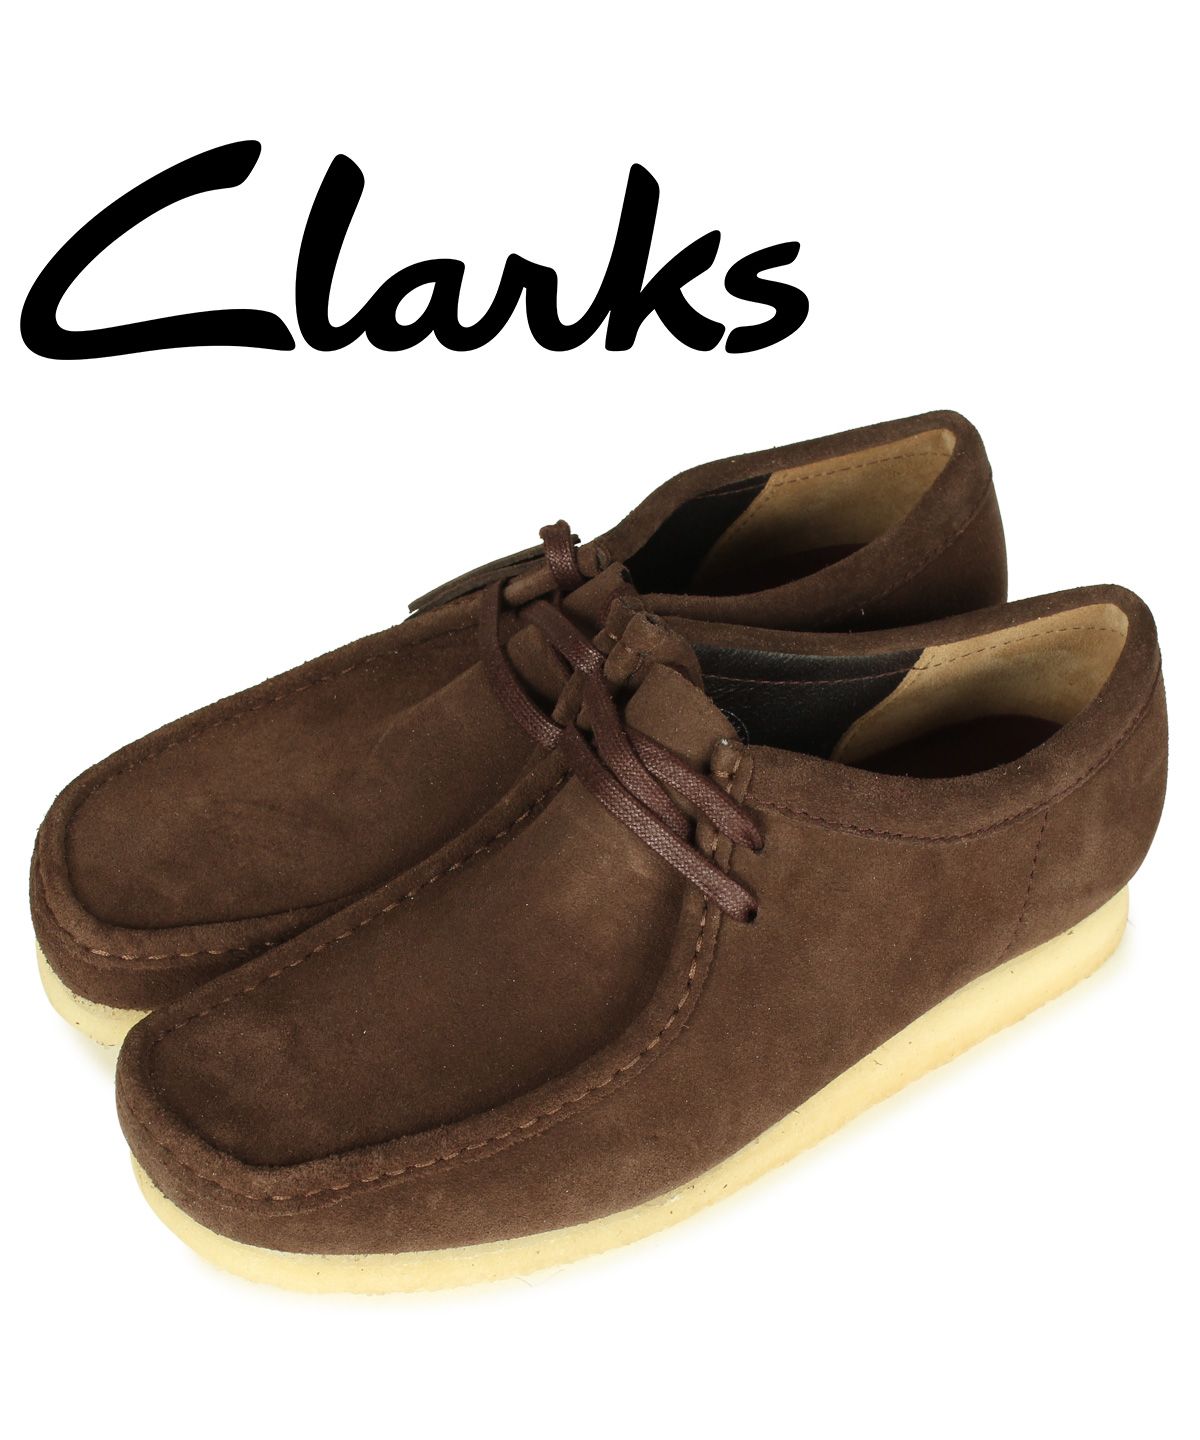 クラークス Clarks ワラビーブーツ メンズ スエード WALLABEE BOOT ダーク ブラウン 26156606